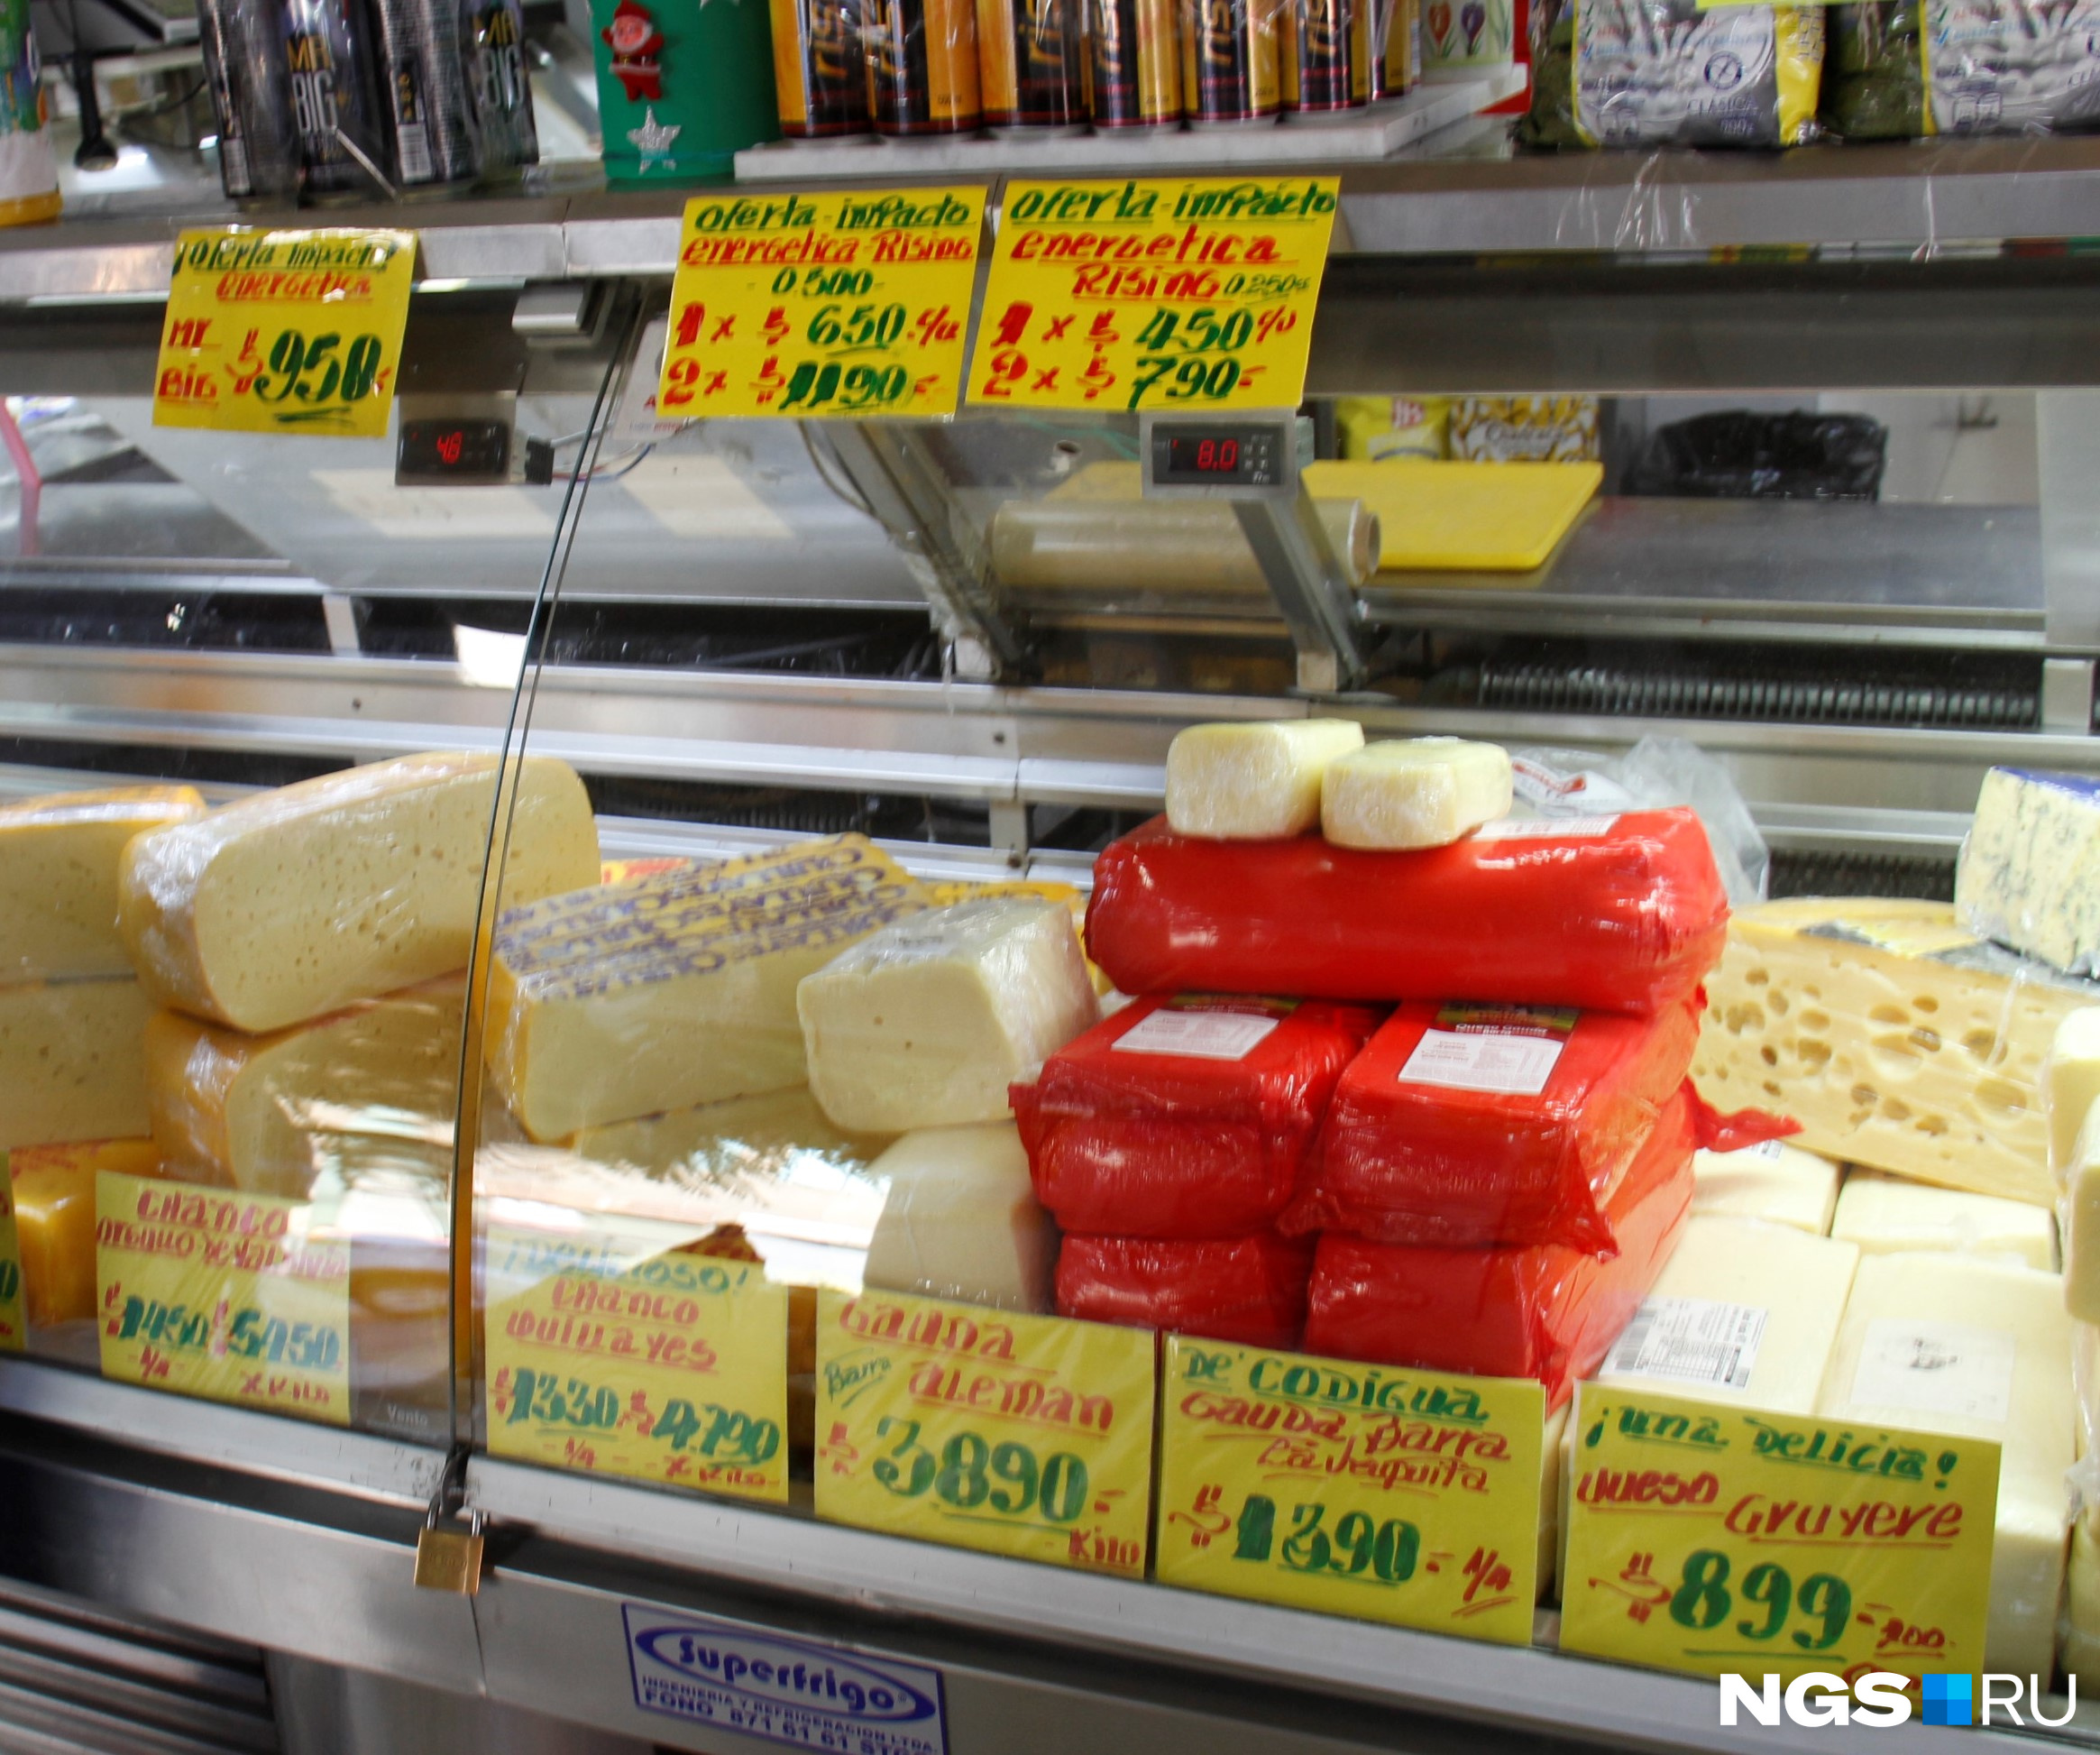 Сыр на рынке города Сантьяго де Чили. Самый дорогой сыр здесь стоит 340 рублей за килограмм по сегодняшнему курсу